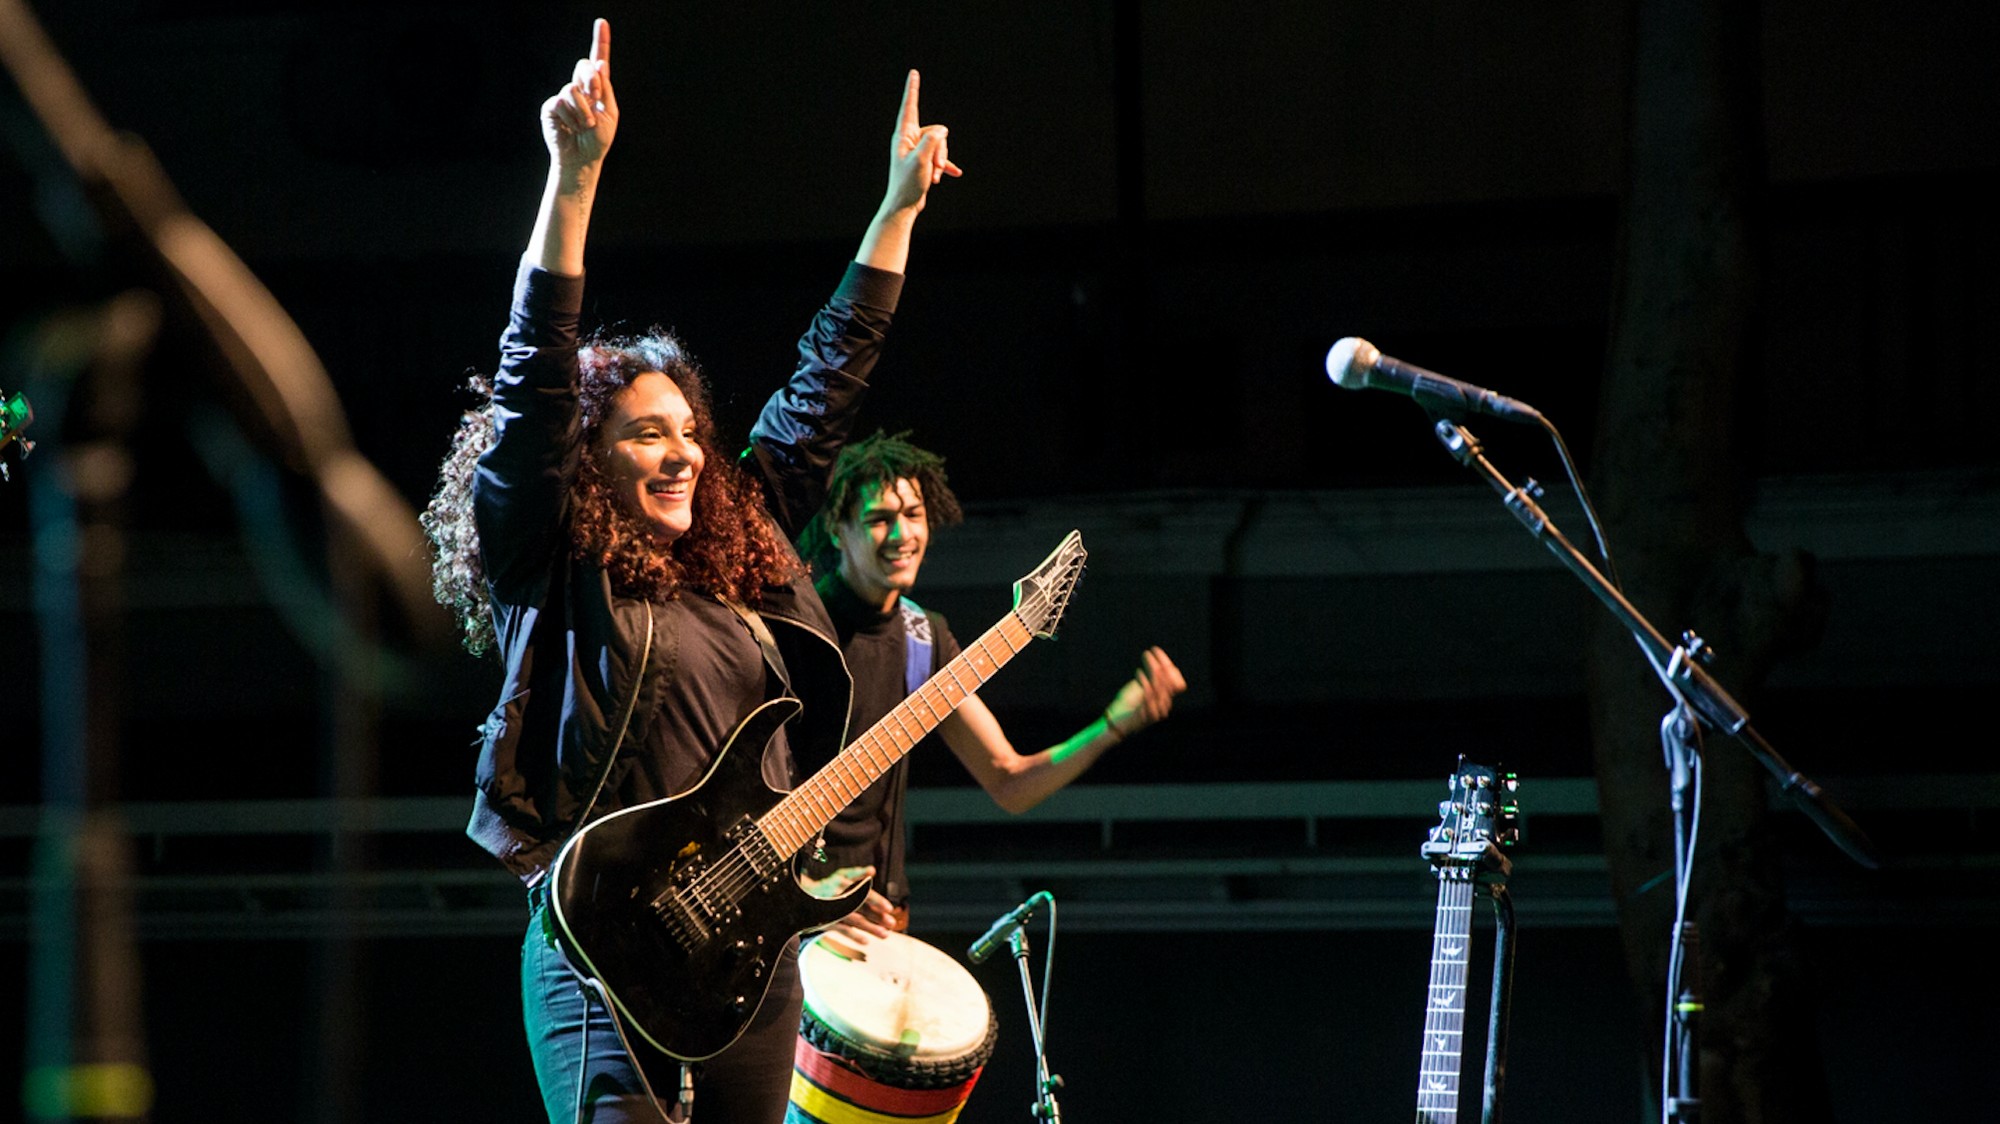 عازفة الجيتار المصرية شيرين عمرو تتحدث عن عالم الميتال وفرقة